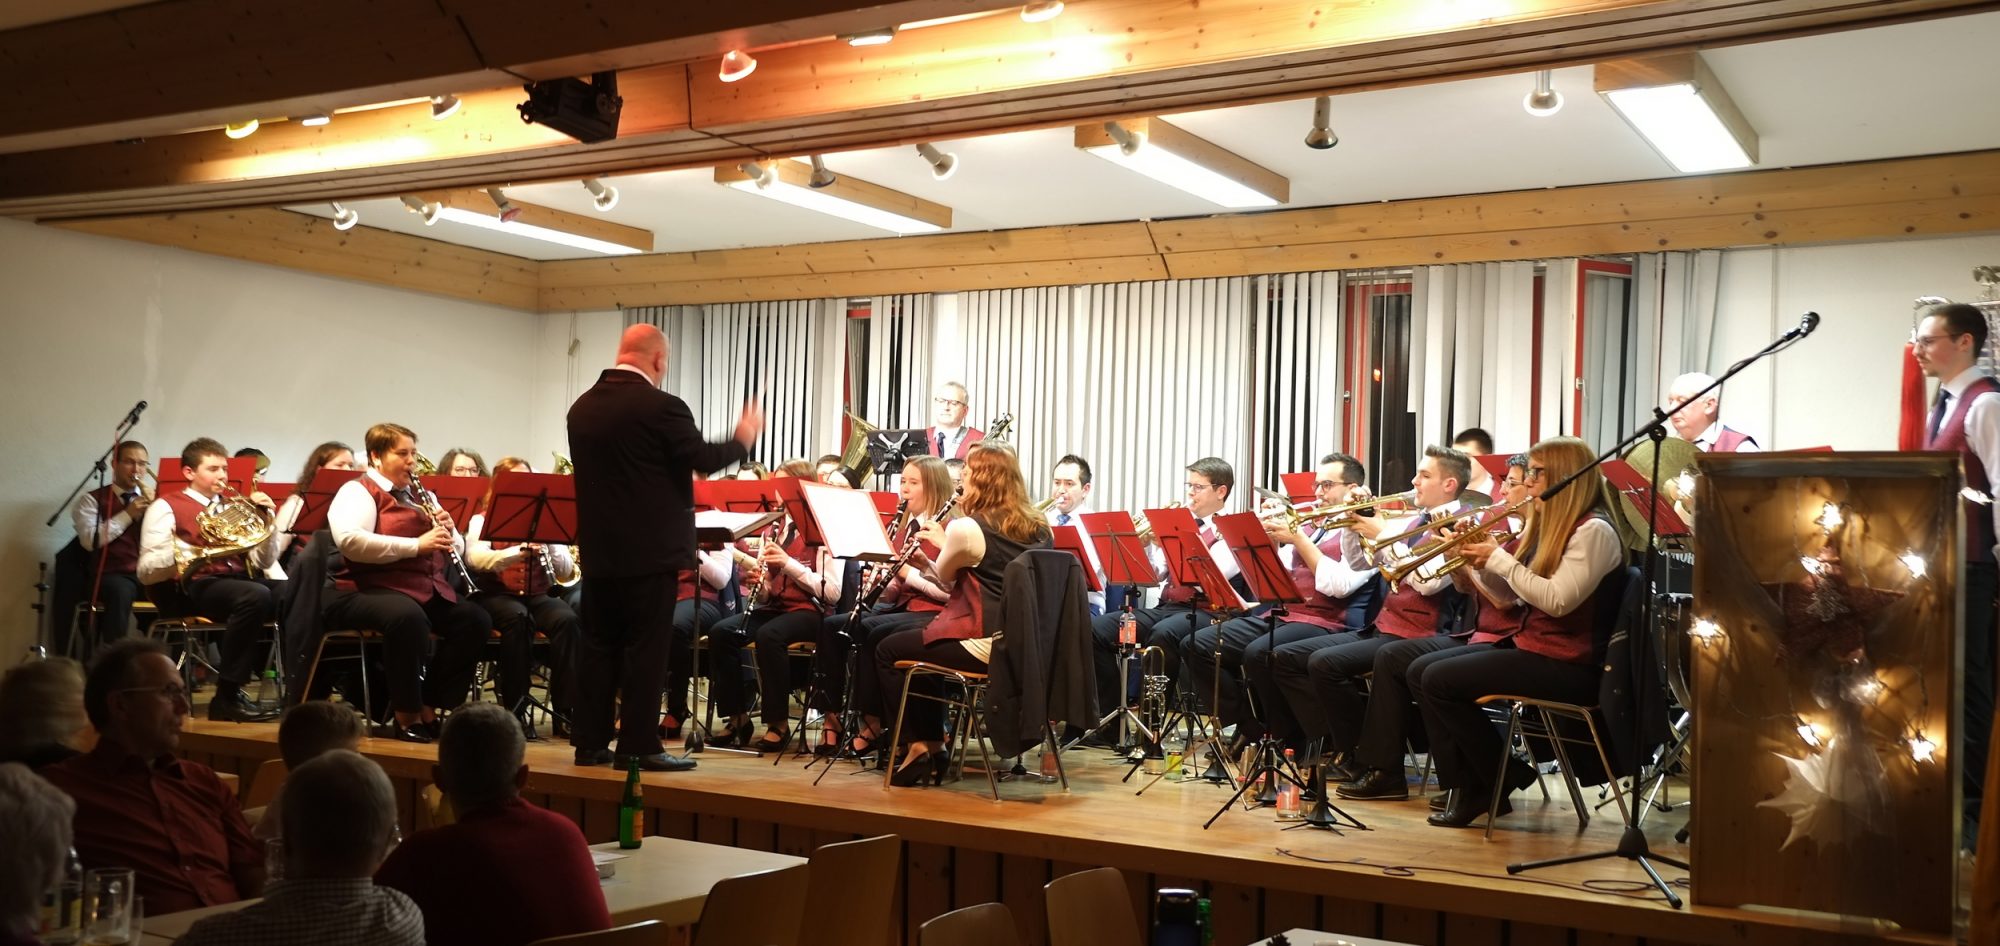 Jahreskonzert des Musikvereins „Gut Klang“ Leinstetten e.V. im Lindensaal in Leinstetten am Samstag, den 7. Dezember 2019